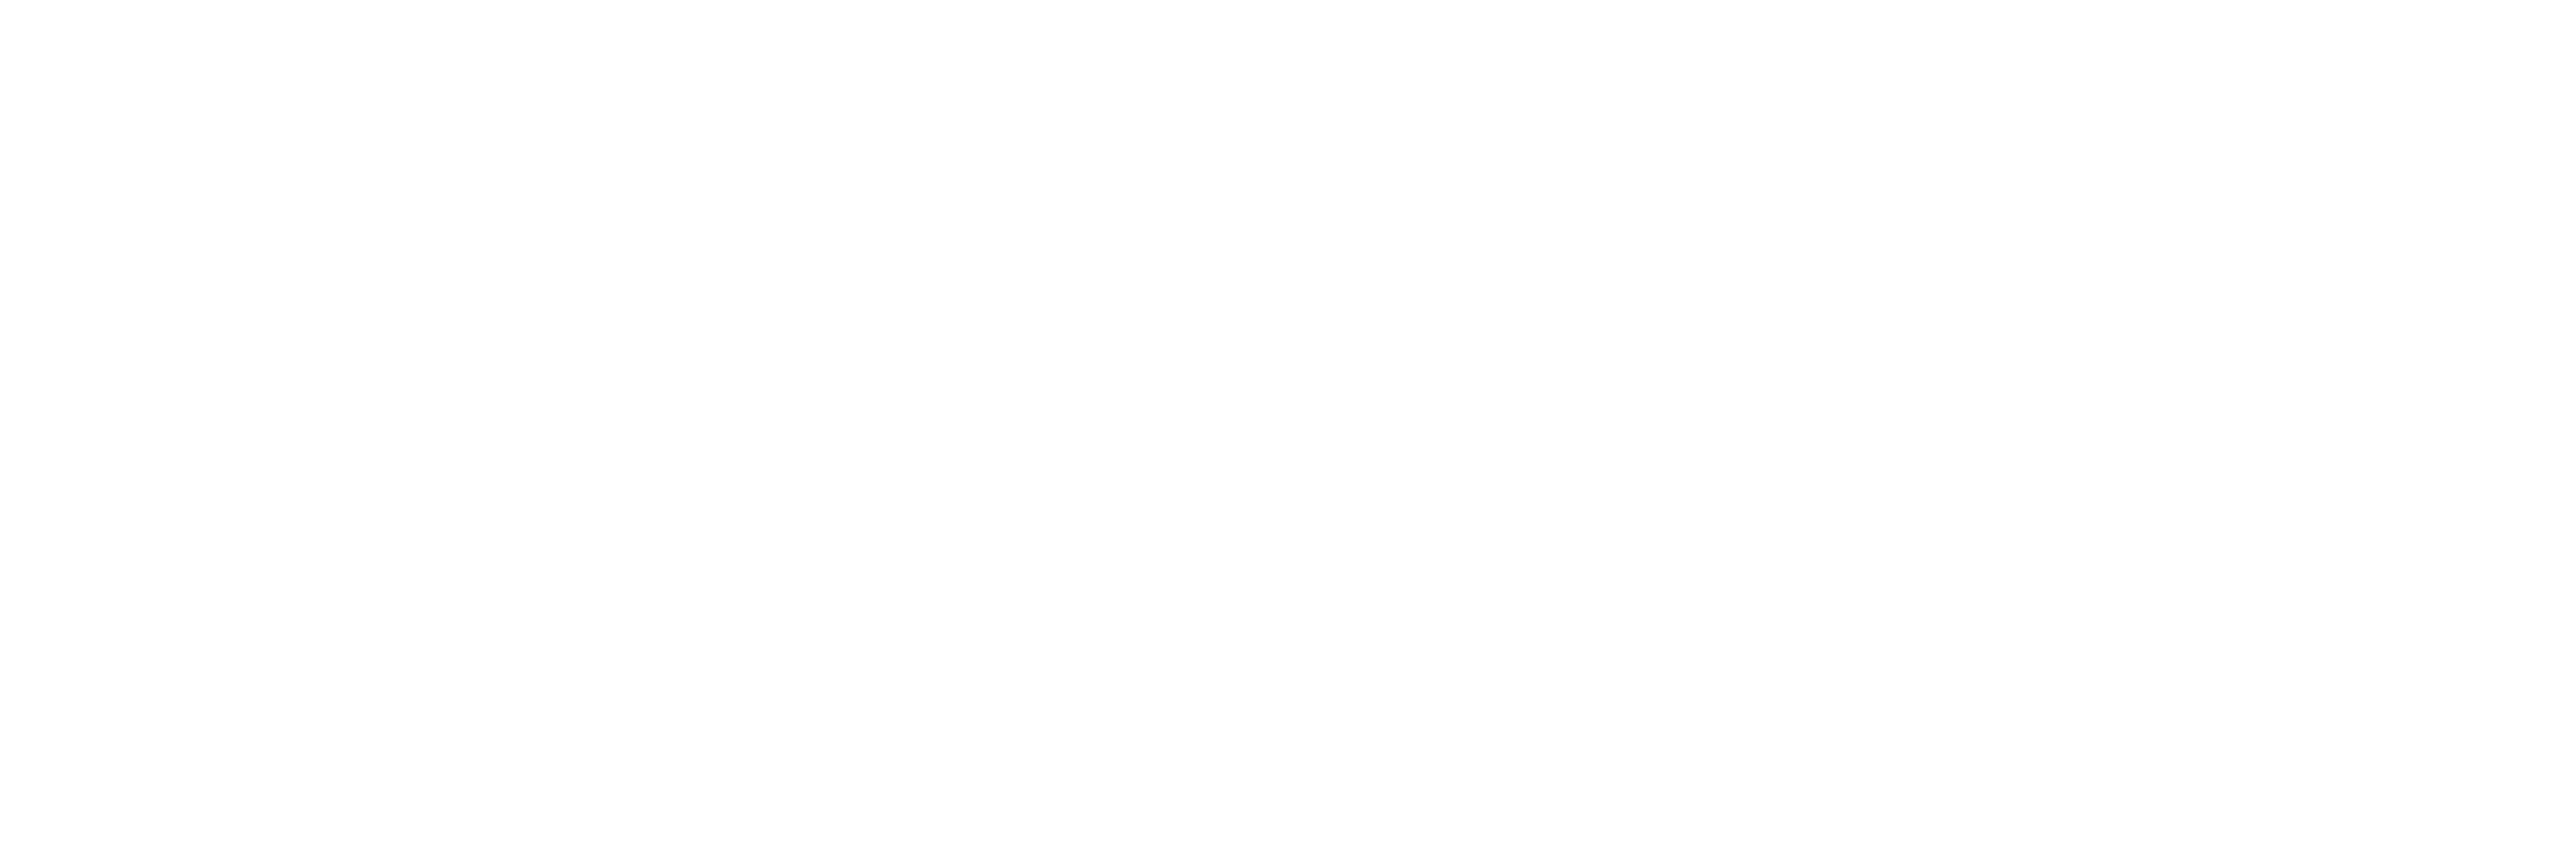 nisantasi-logo-web-beyaz